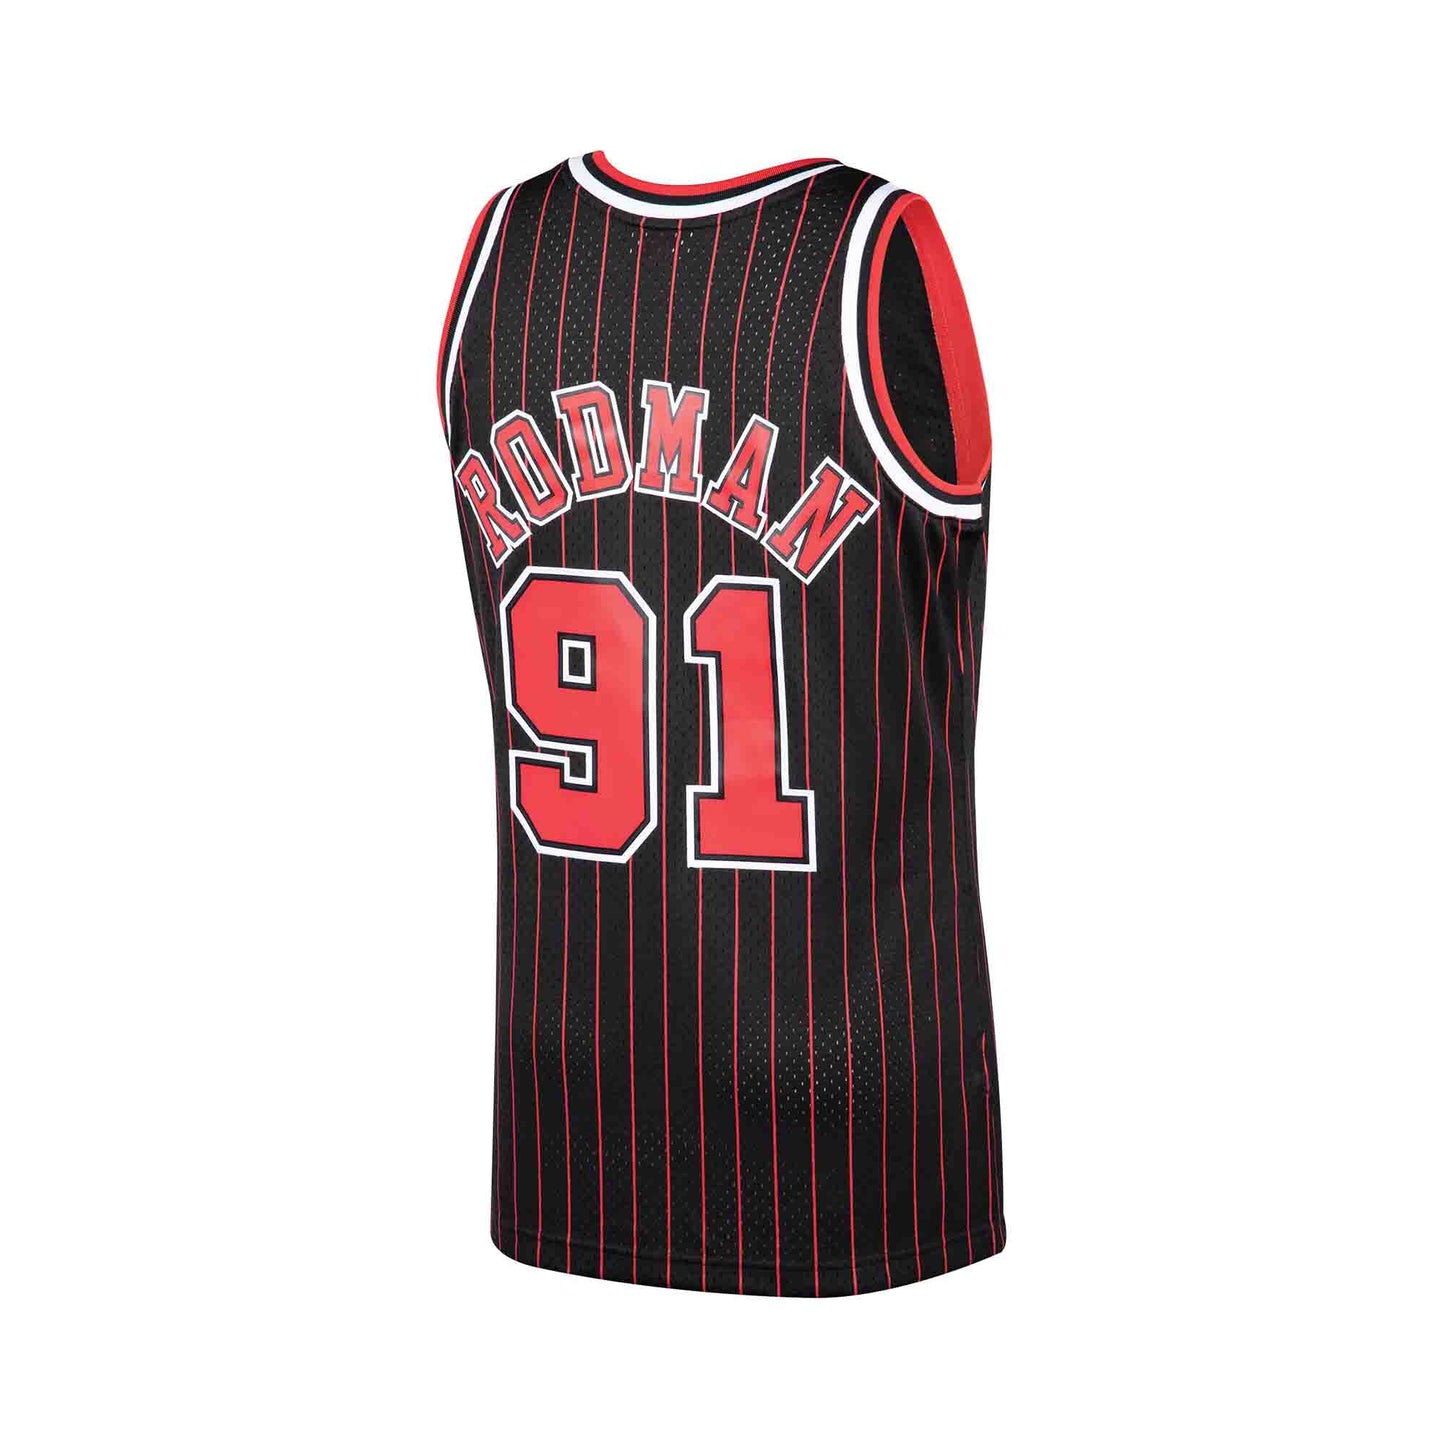 Mitchell & Ness Women's Chicago Bulls Dennis Rodman #91 NBA